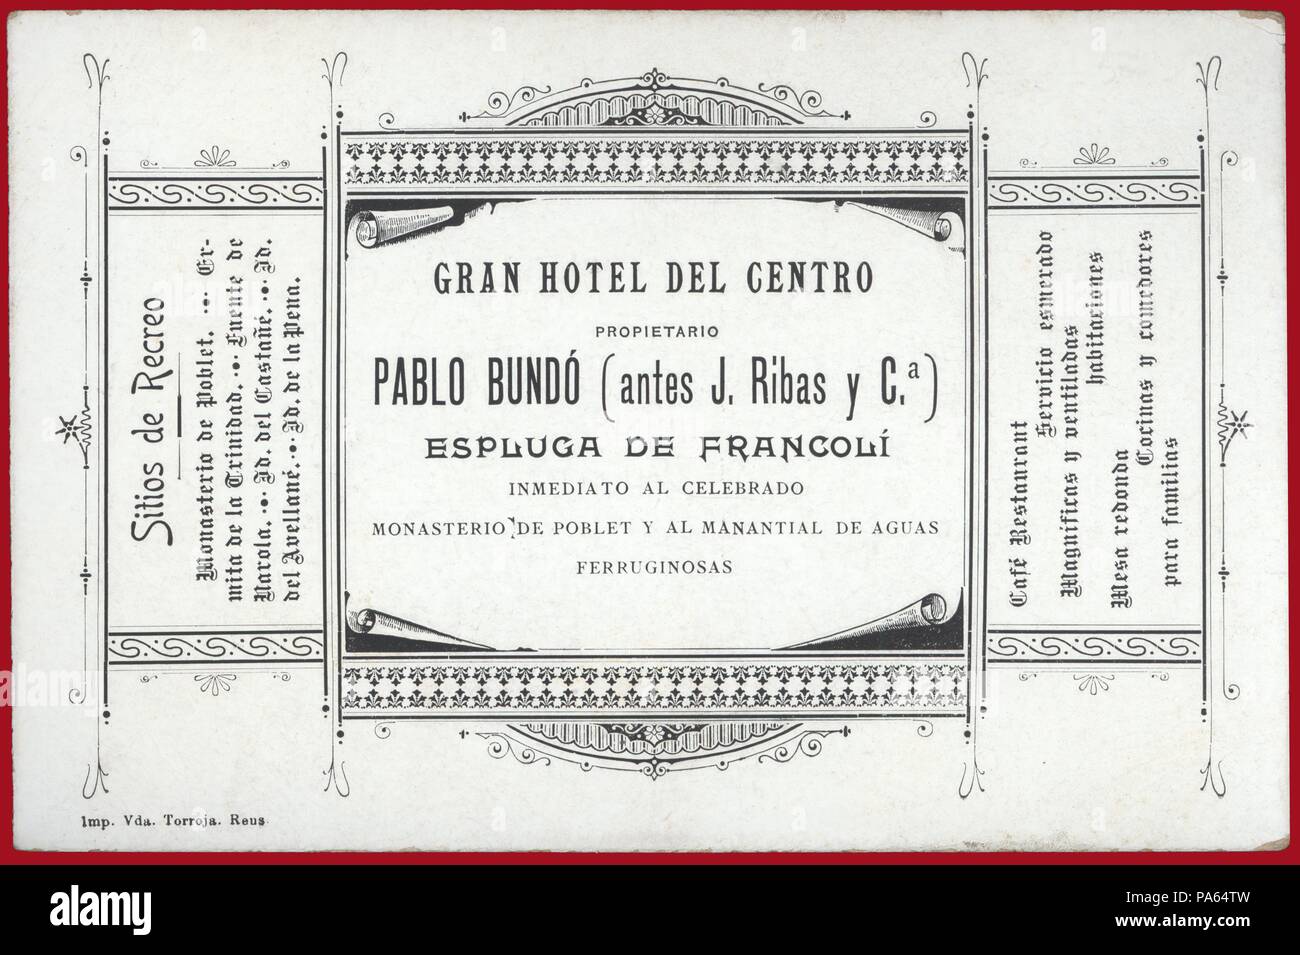 Publicidad. Gran Hotel del Centro. Pablo Bundó en la Espluga de Francolí. Año 1890. Stock Photo